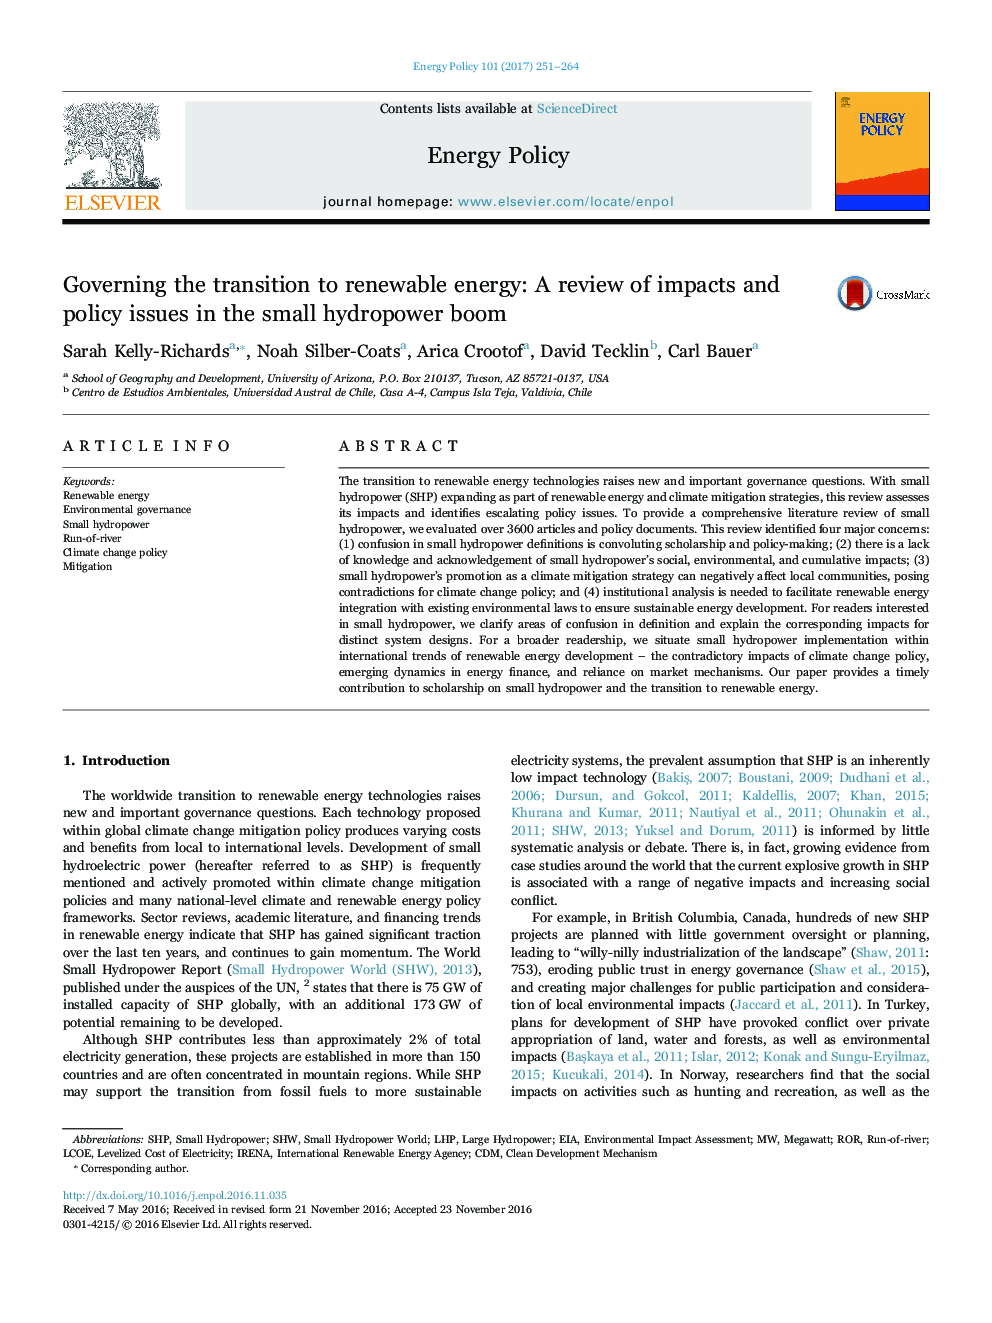 در حال گذار به انرژی تجدید پذیر: بررسی تاثیرات و مسائل مربوط به سیاست در رونق آبی کوچک 